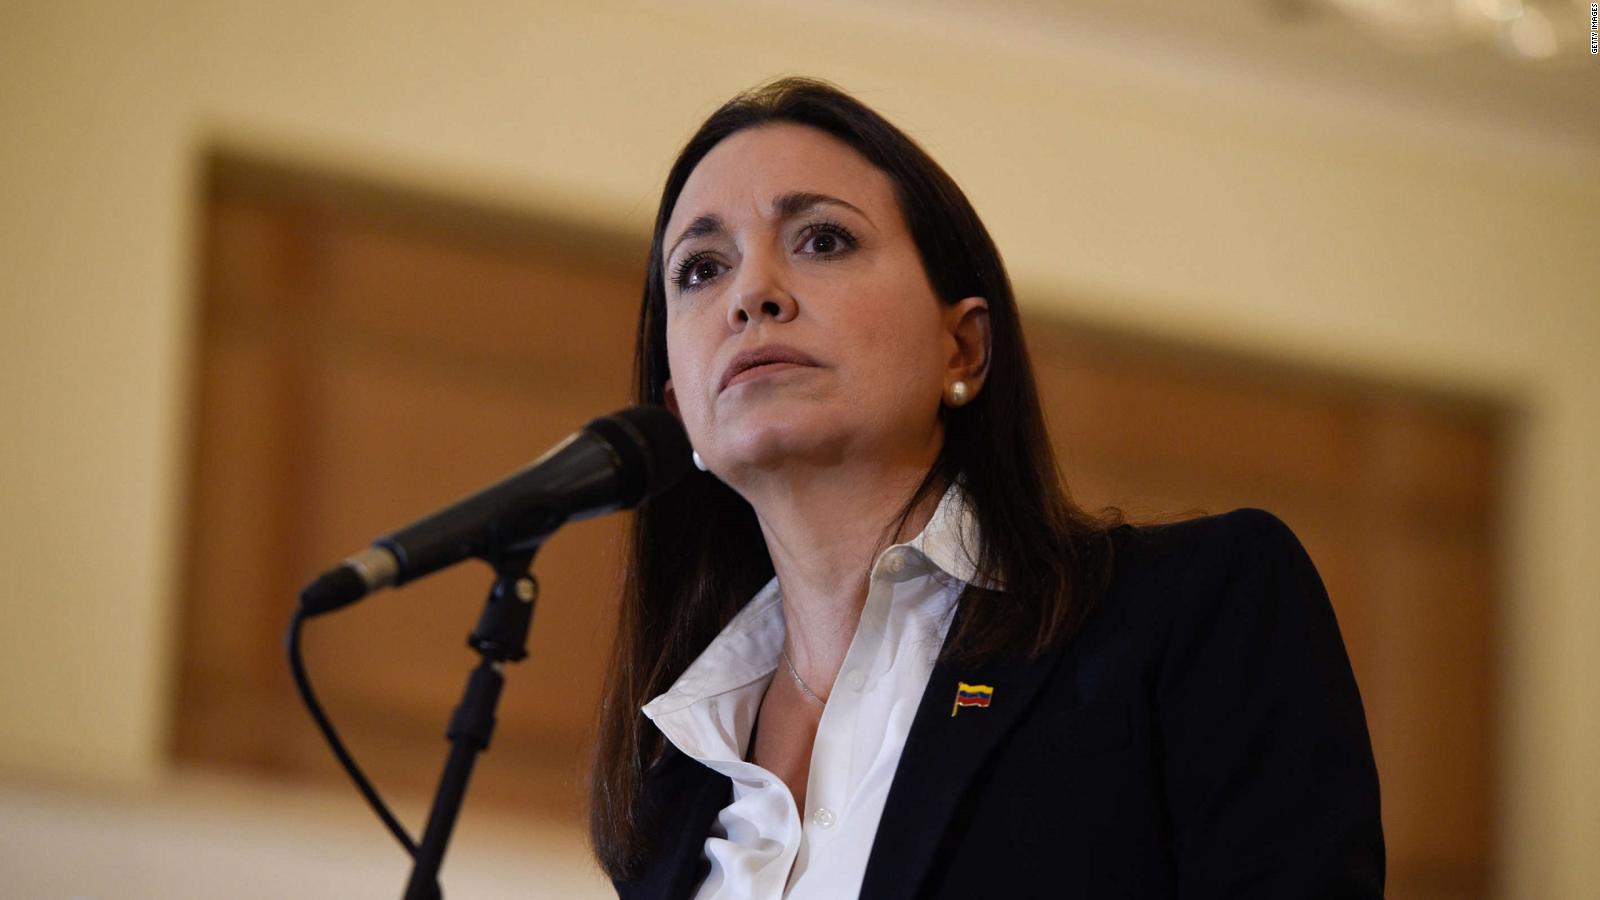 Maria Corina Machado, kandydatka opozycji wenezuelskiej, żąda rewizji decyzji o wykluczeniu jej z polityki